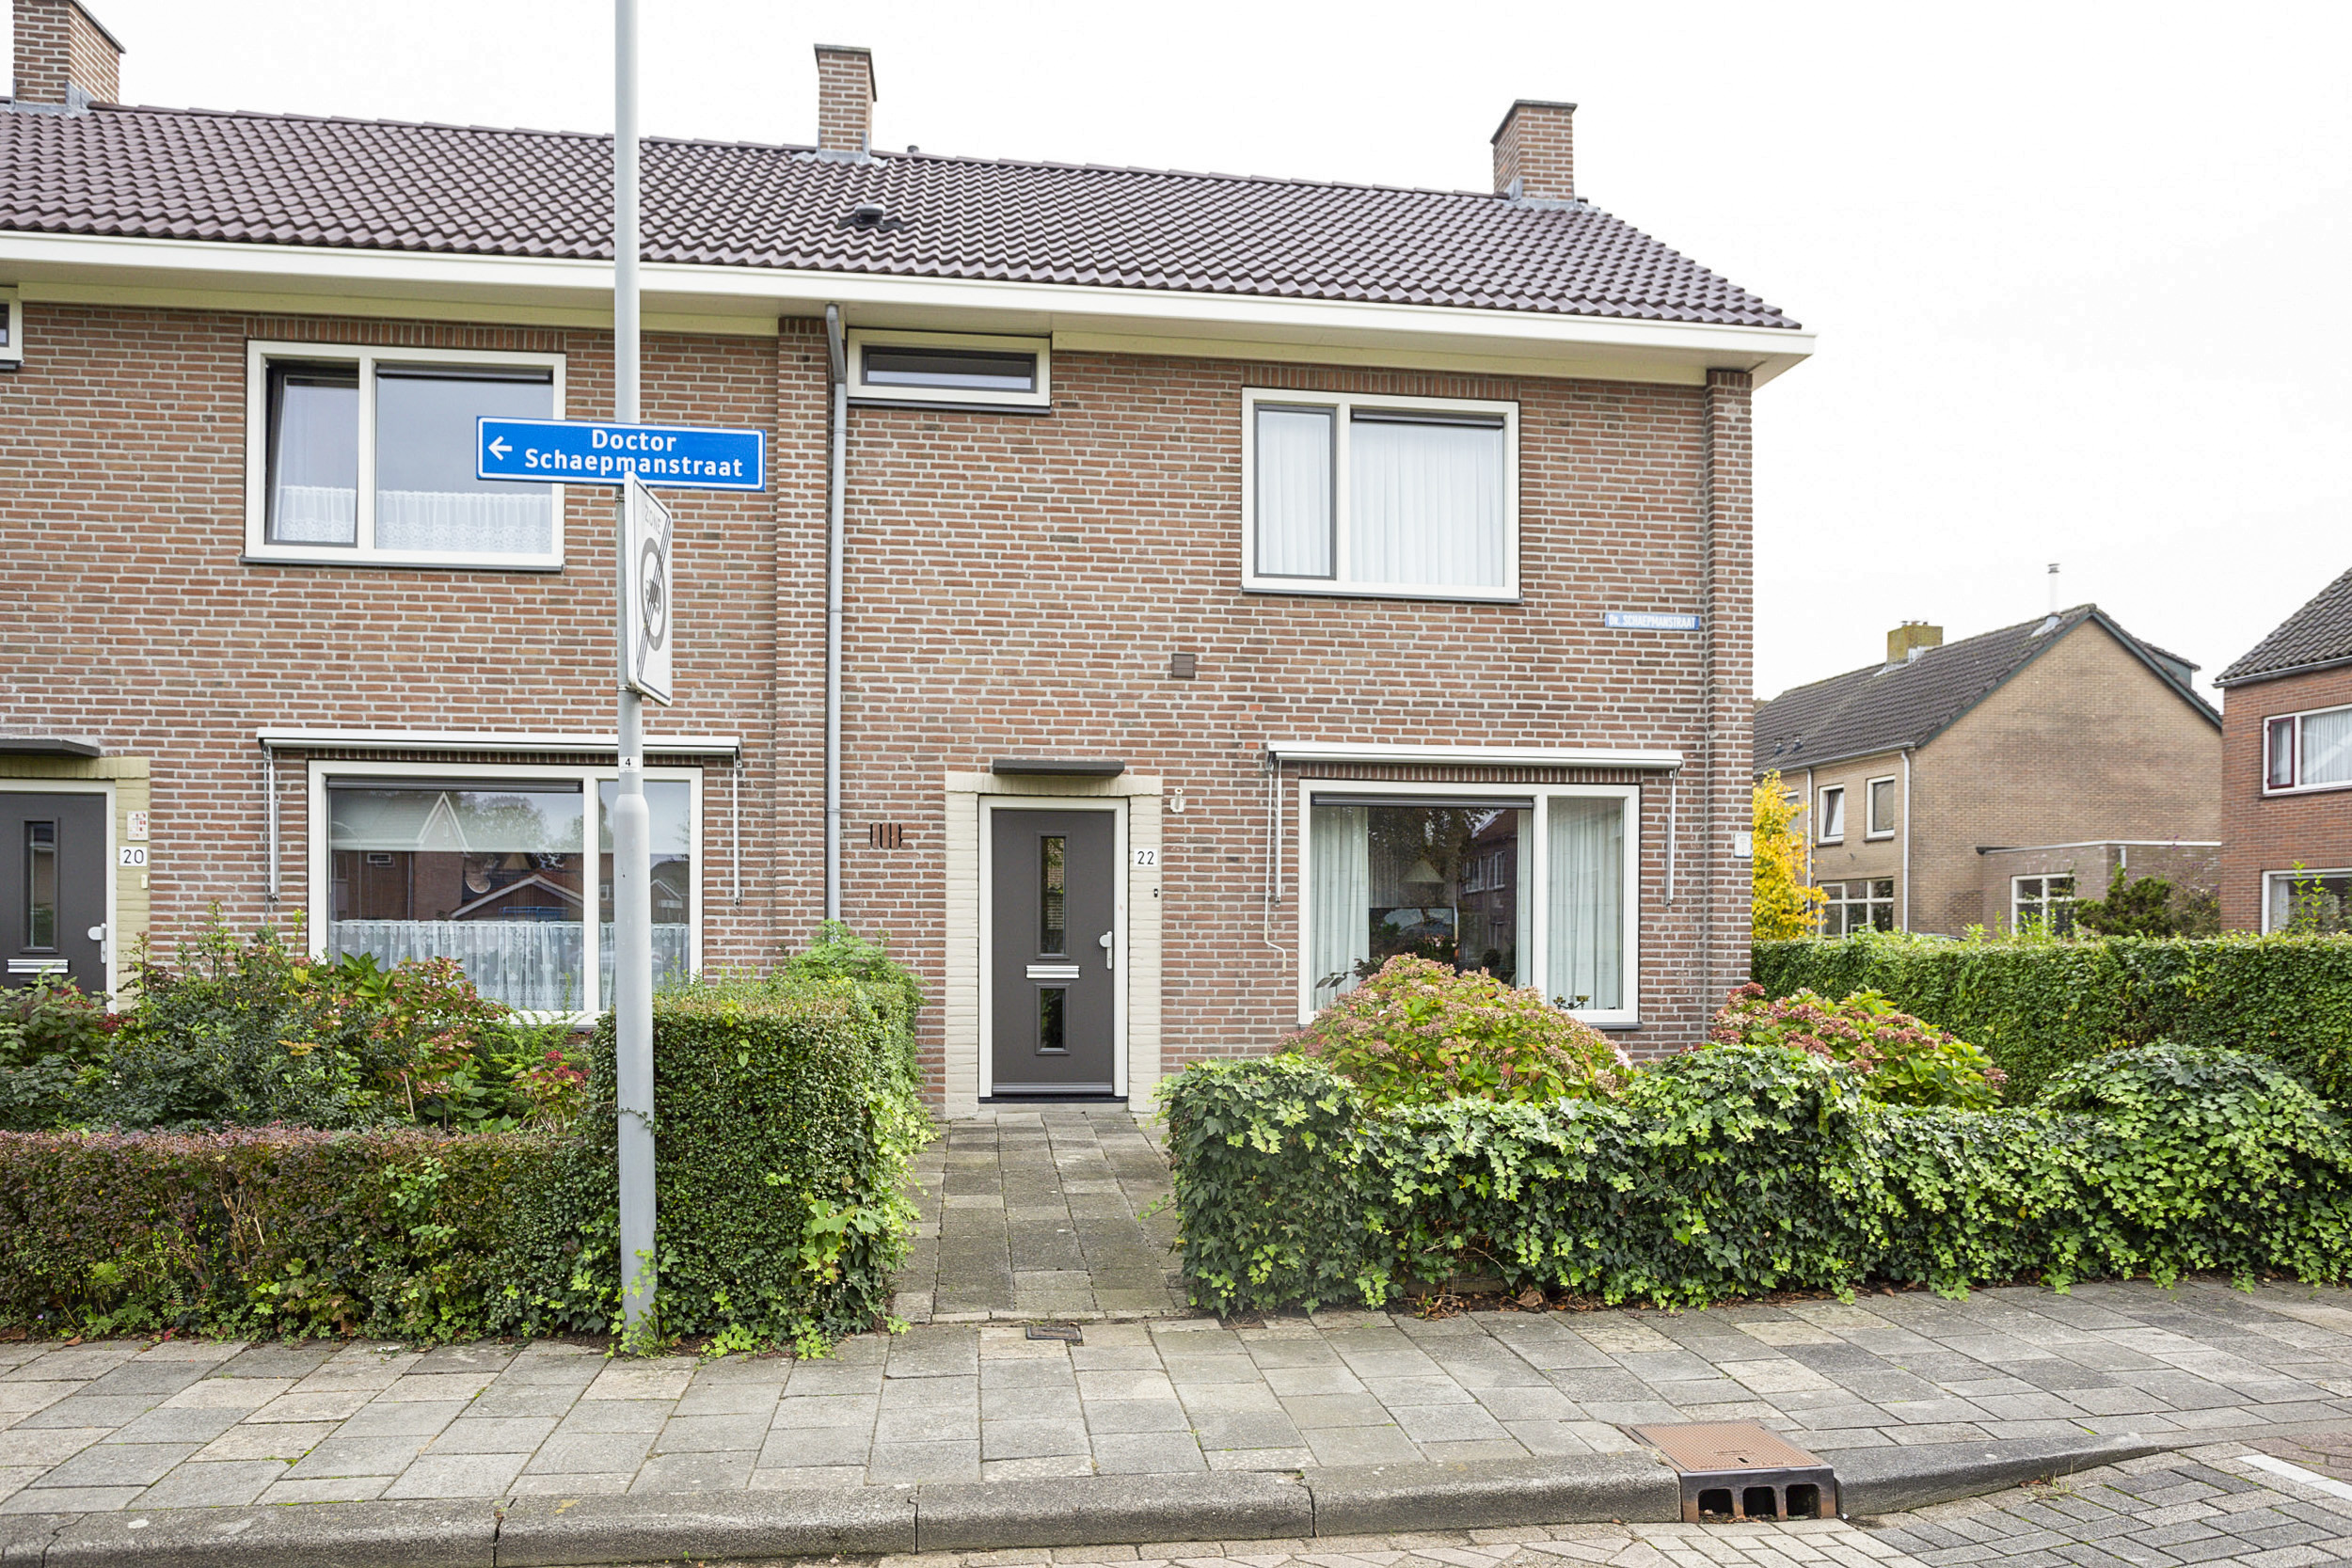 Doctor Schaepmanstraat 22, 4926 BG Lage Zwaluwe, Nederland